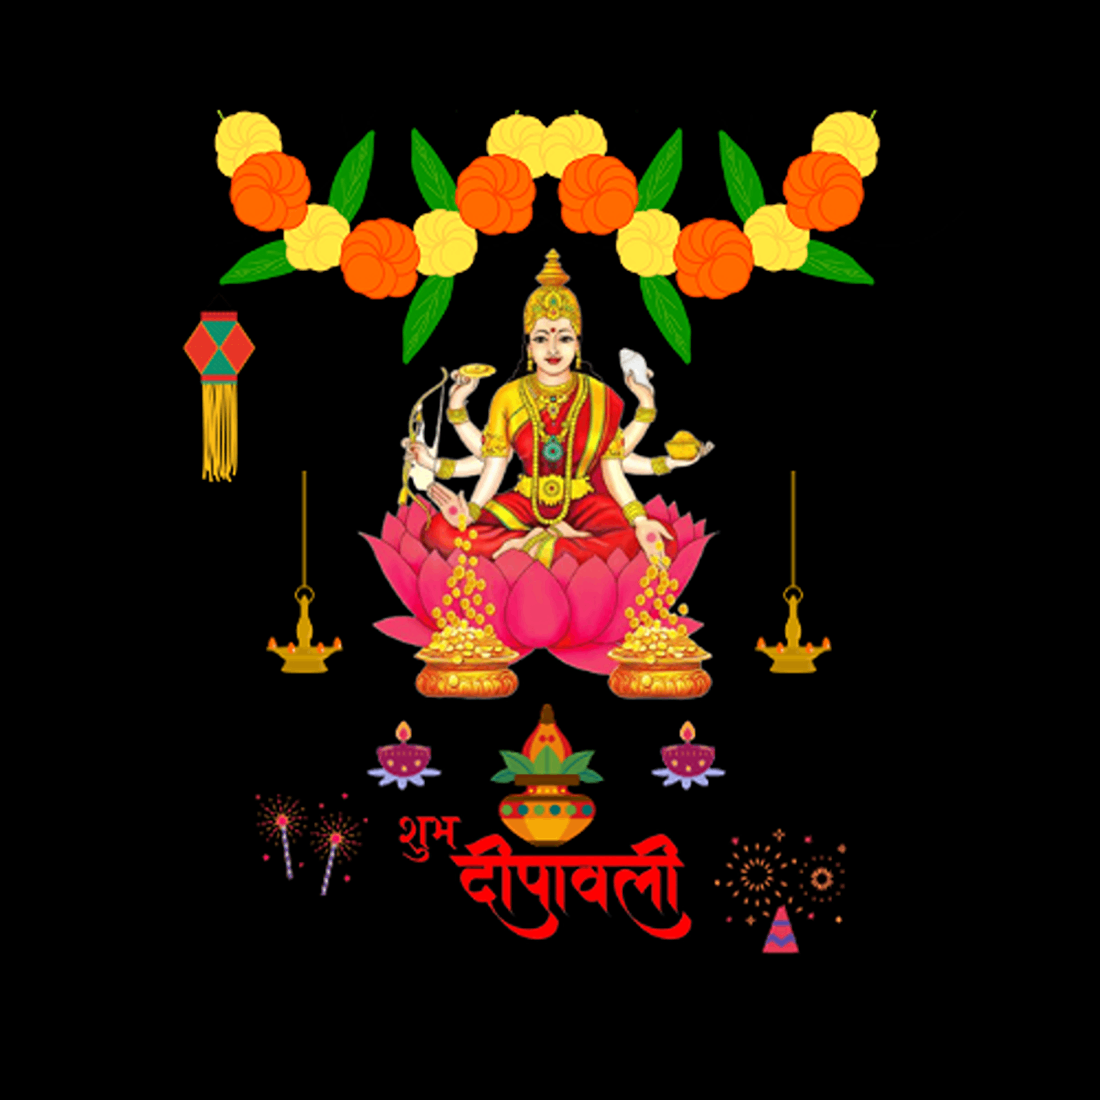 Maa Laxmi - Shubha Diwali Template preview image.